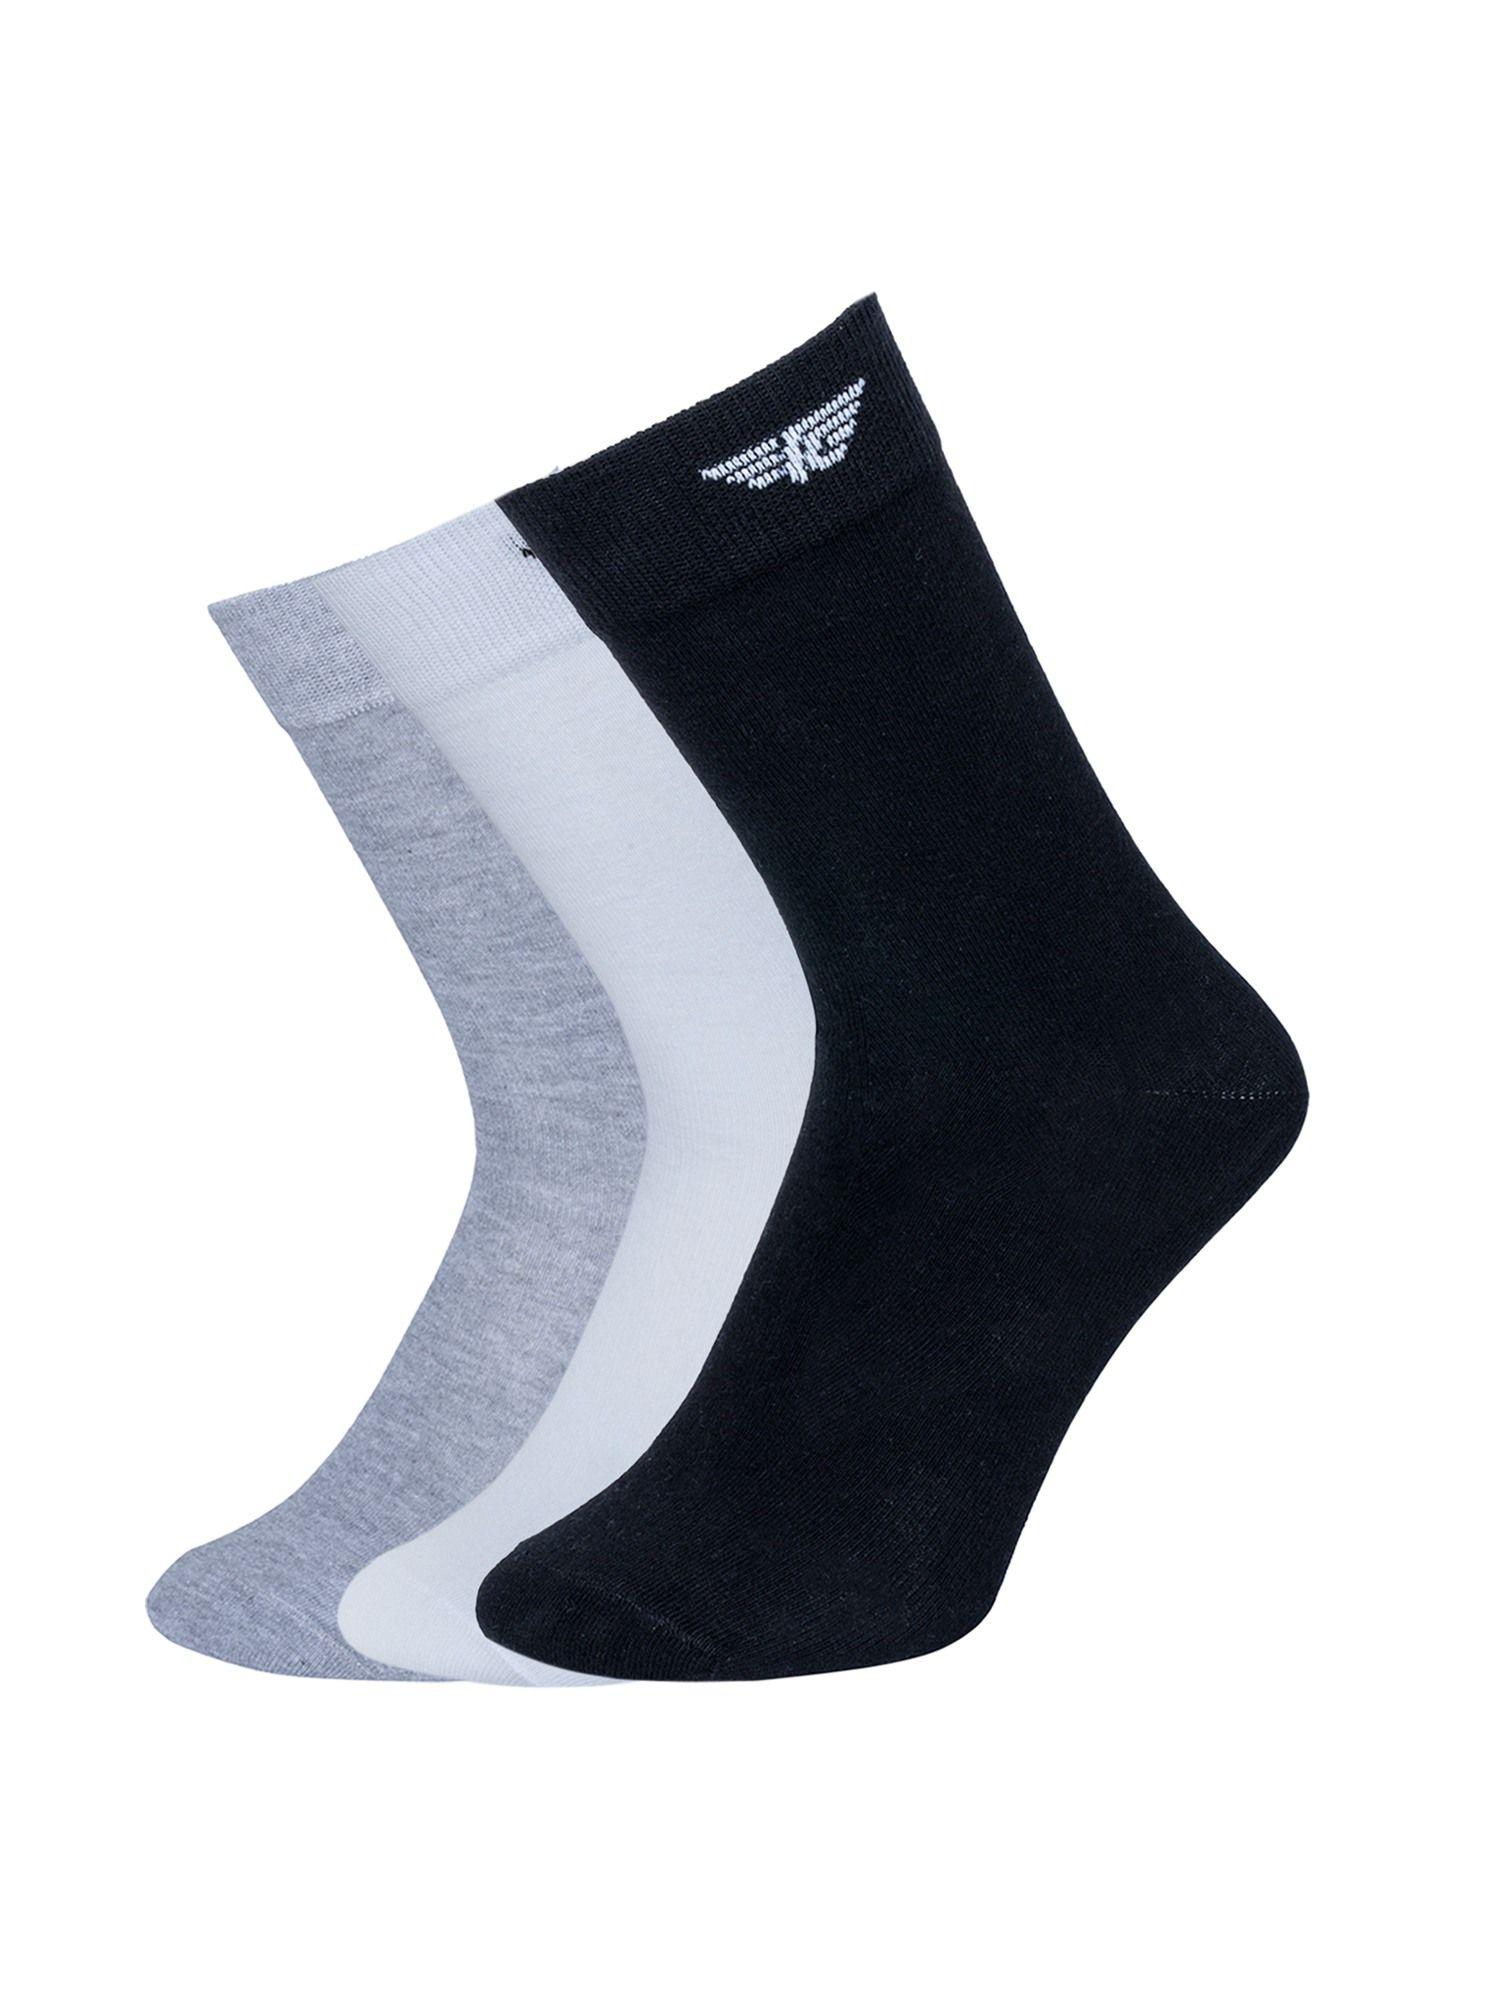 men multi-color solid above ankle socks (pack of 3)